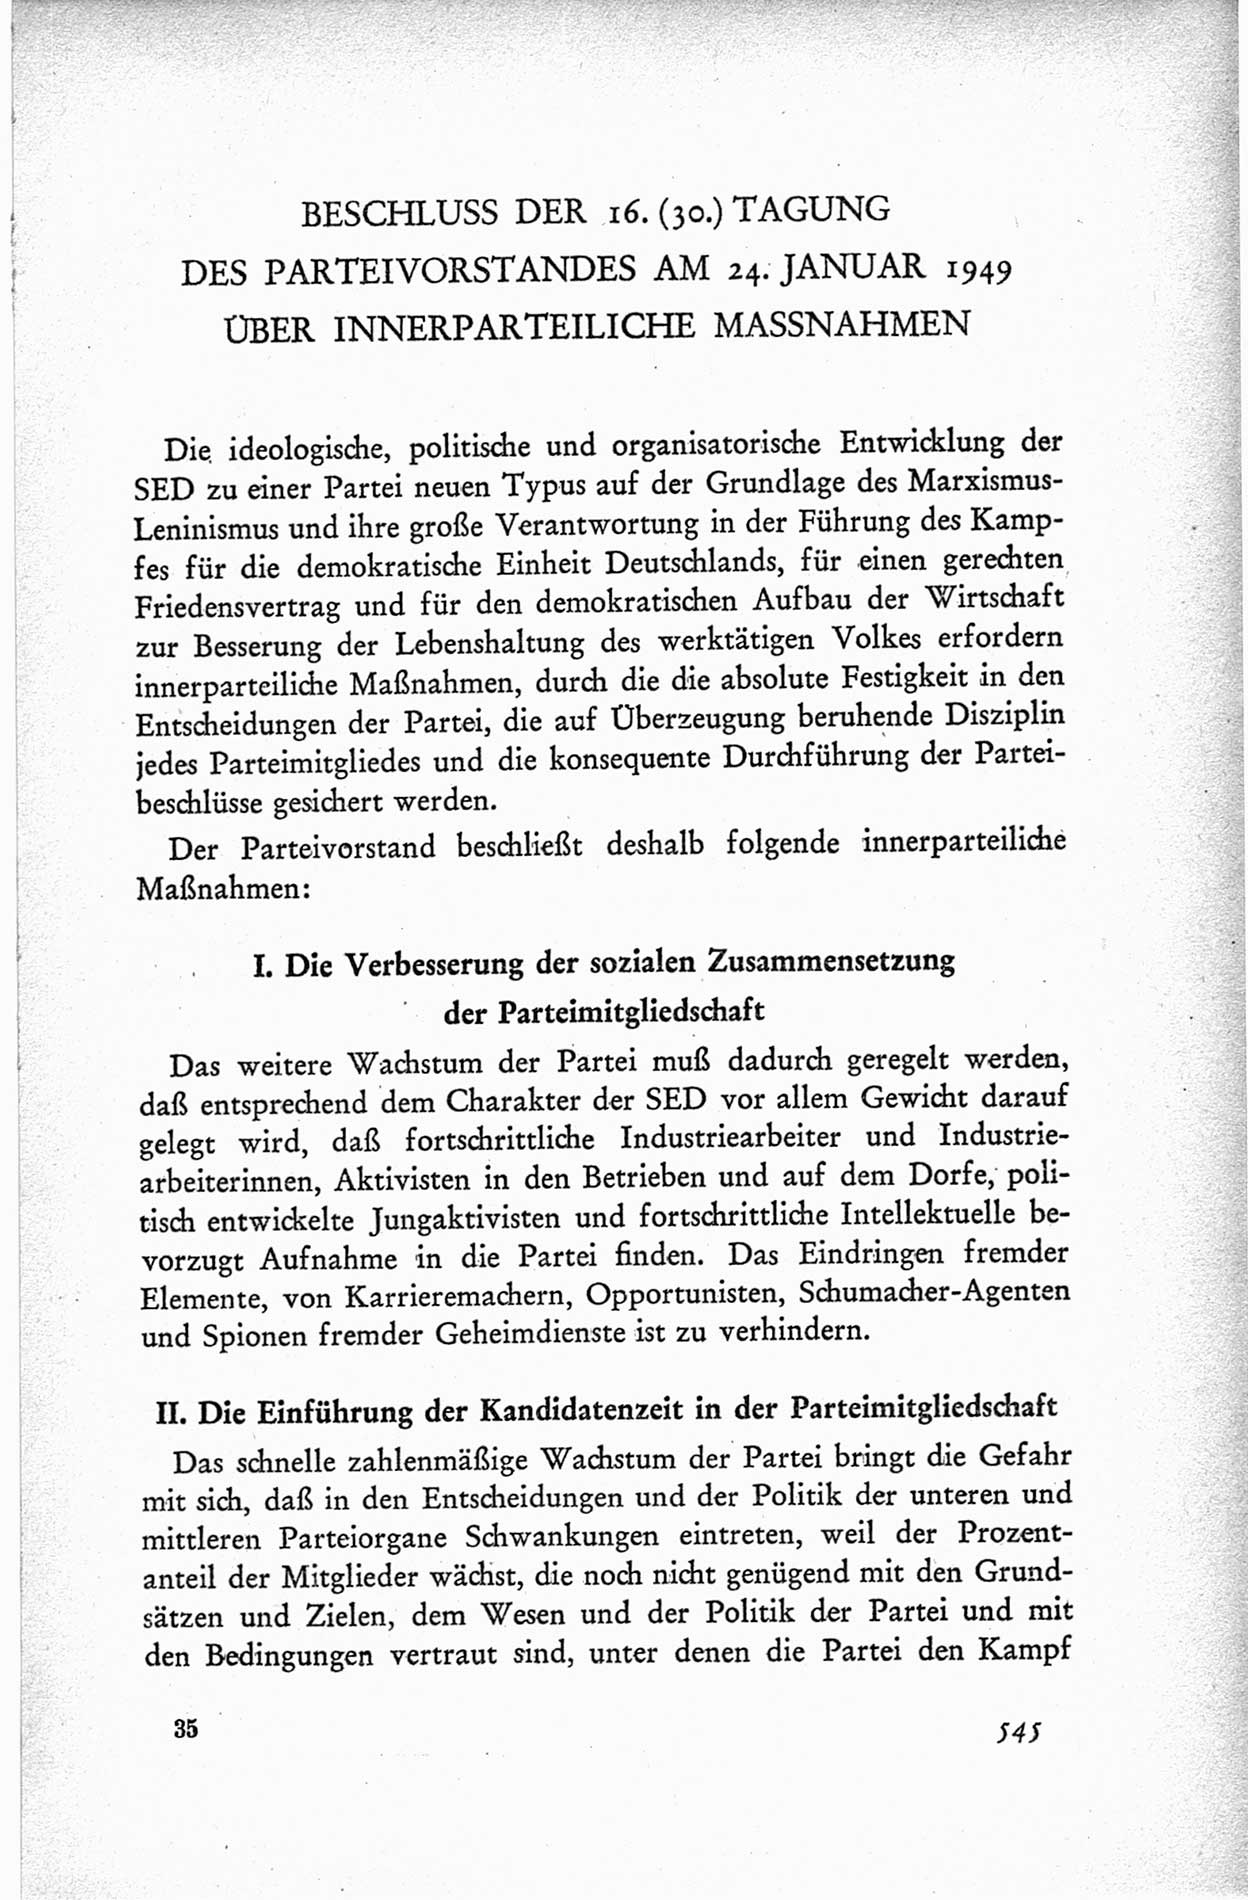 Protokoll der ersten Parteikonferenz der Sozialistischen Einheitspartei Deutschlands (SED) [Sowjetische Besatzungszone (SBZ) Deutschlands] vom 25. bis 28. Januar 1949 im Hause der Deutschen Wirtschaftskommission zu Berlin, Seite 545 (Prot. 1. PK SED SBZ Dtl. 1949, S. 545)